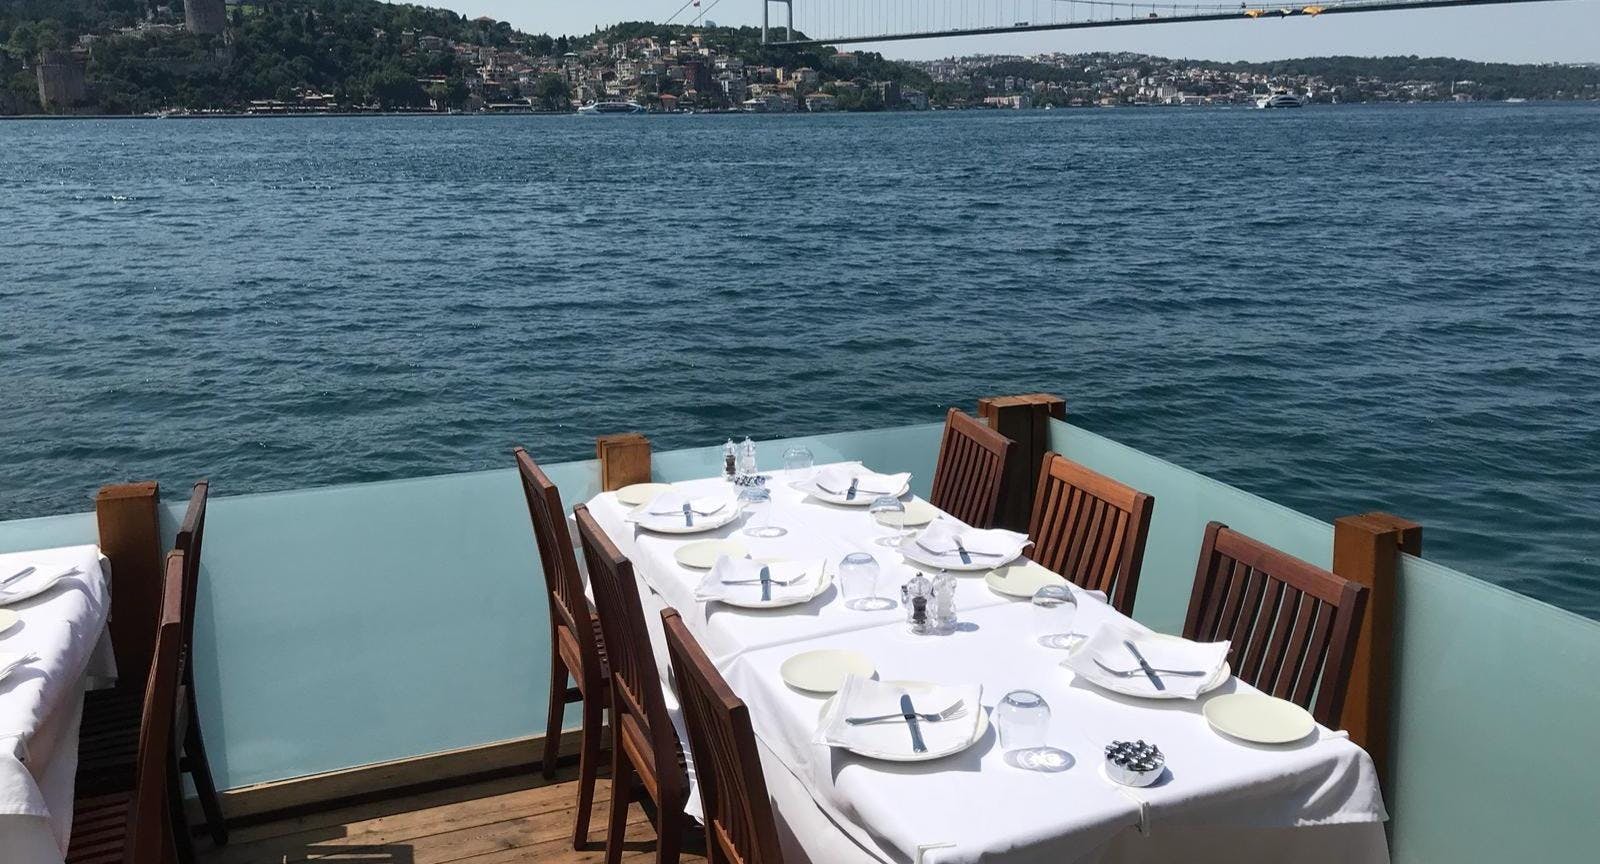 Photo of restaurant Gümüş Yalı Balıkçısı in Anadoluhisarı, Istanbul